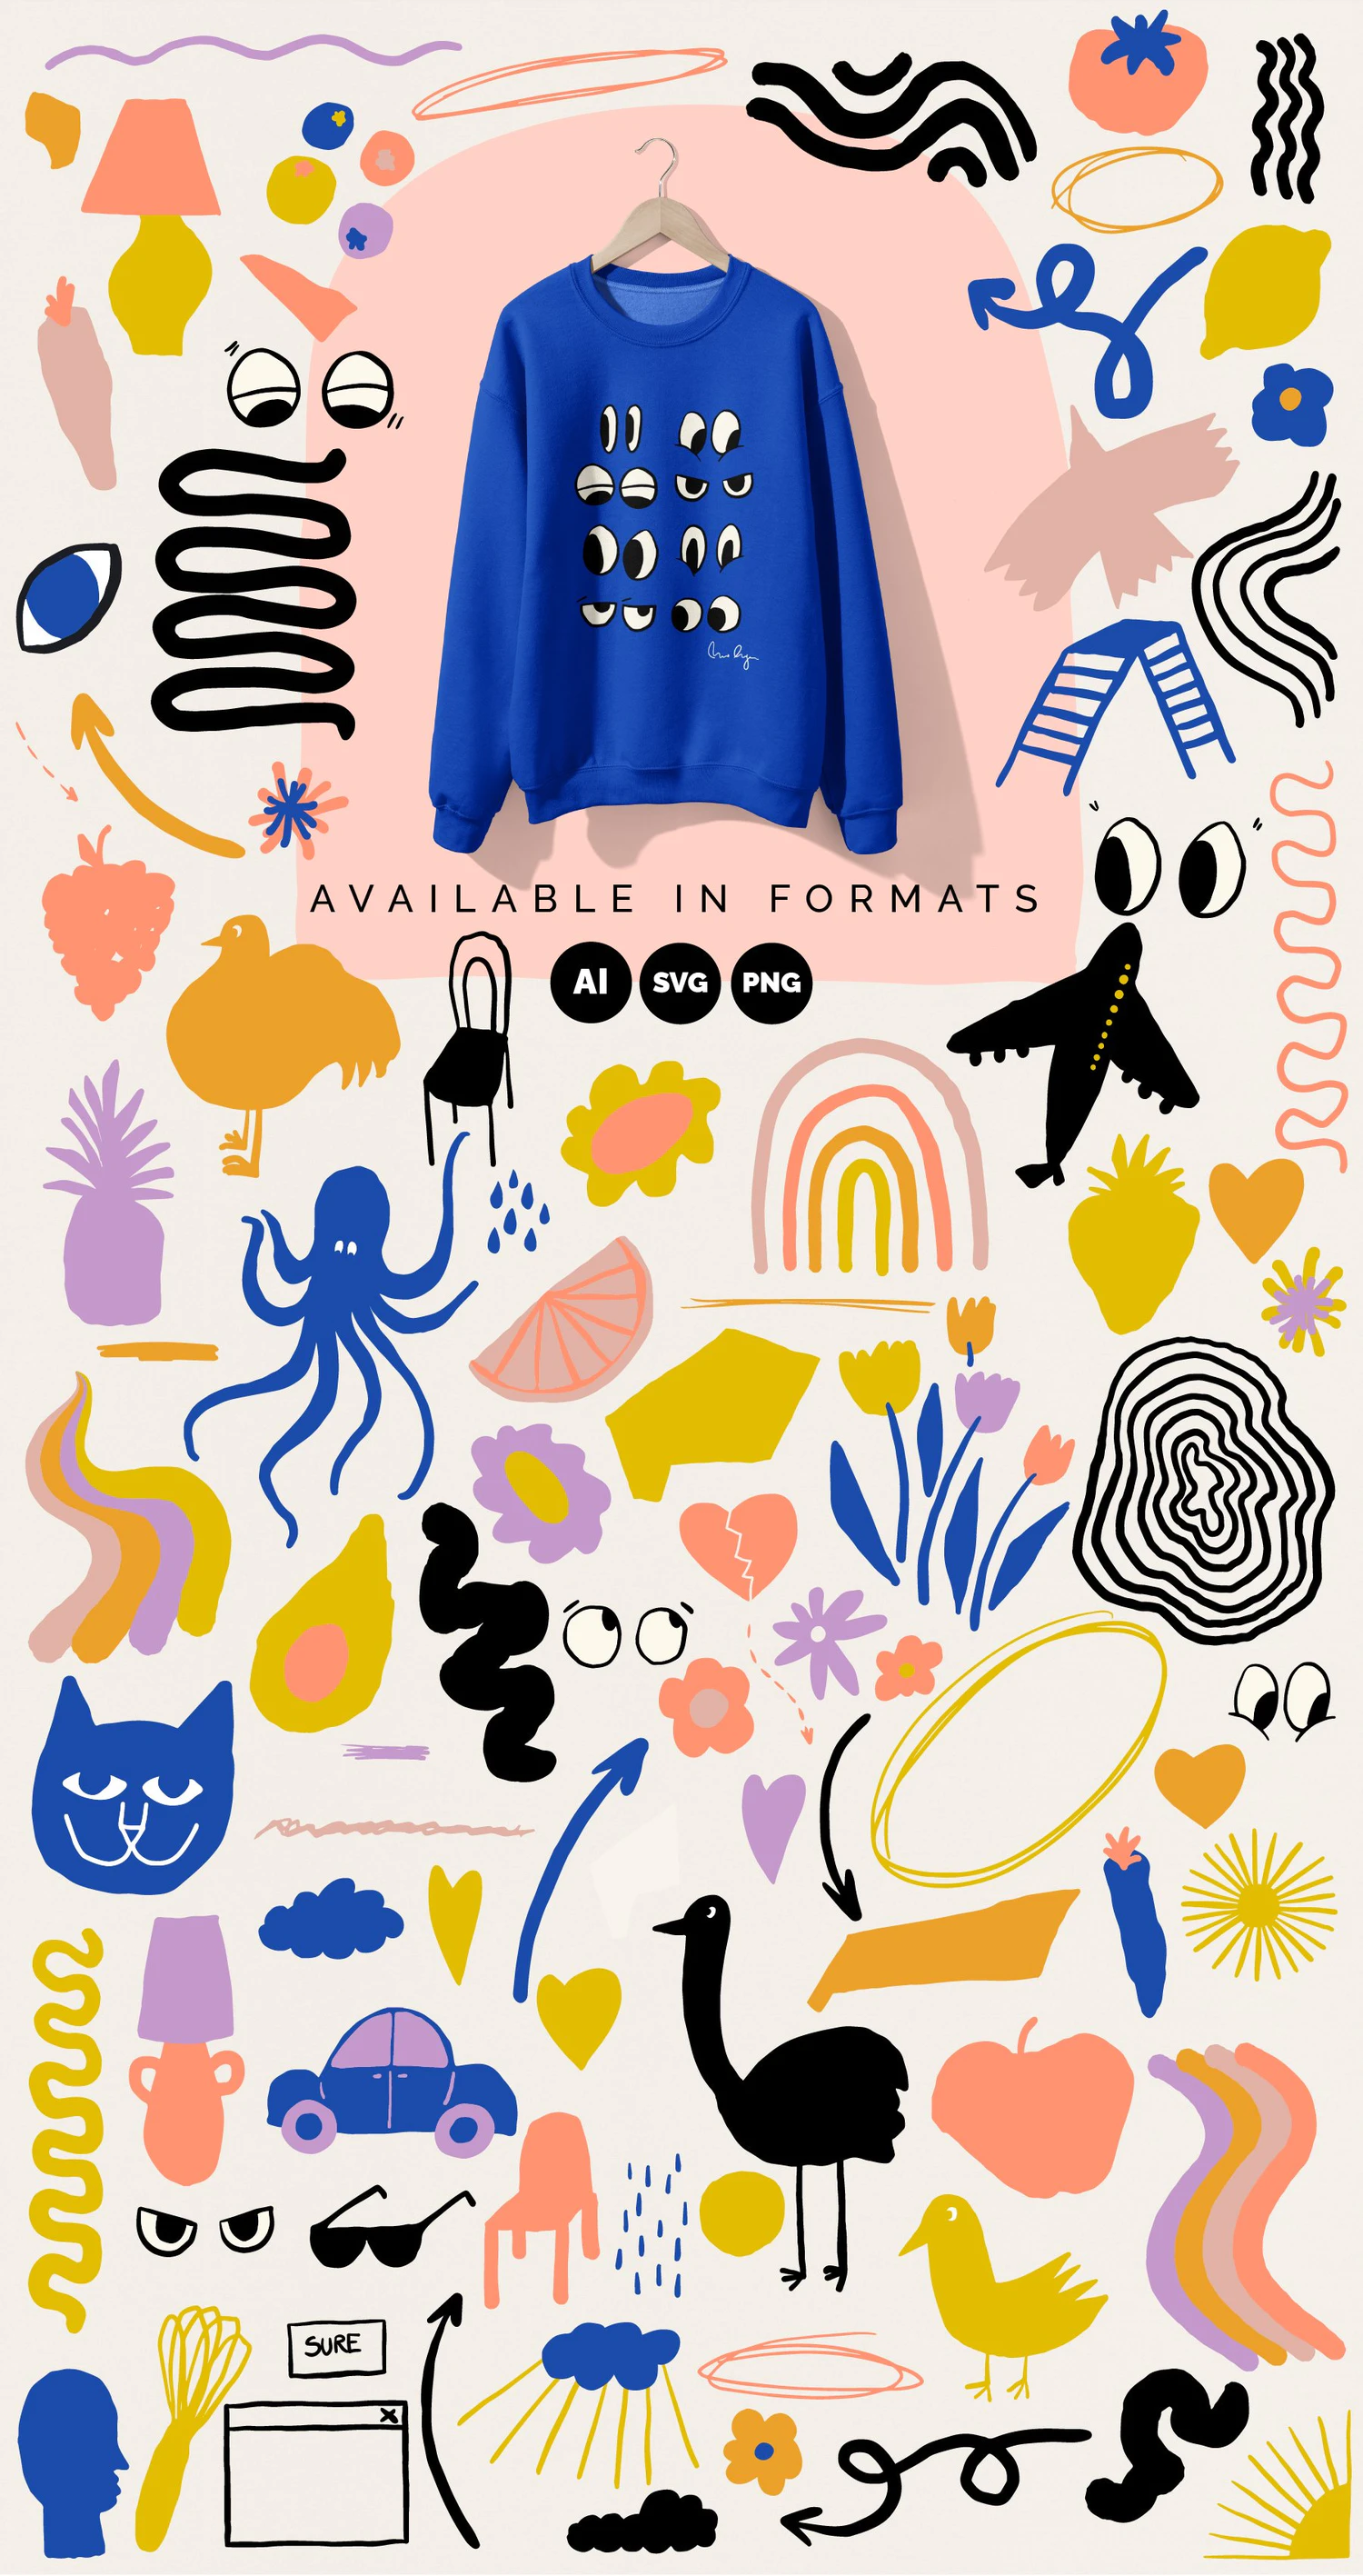 3355 复古艺术剪贴画产品包装打印室内装裱海报动物花卉相框地理对象Naive Art Clipart + Art Posters